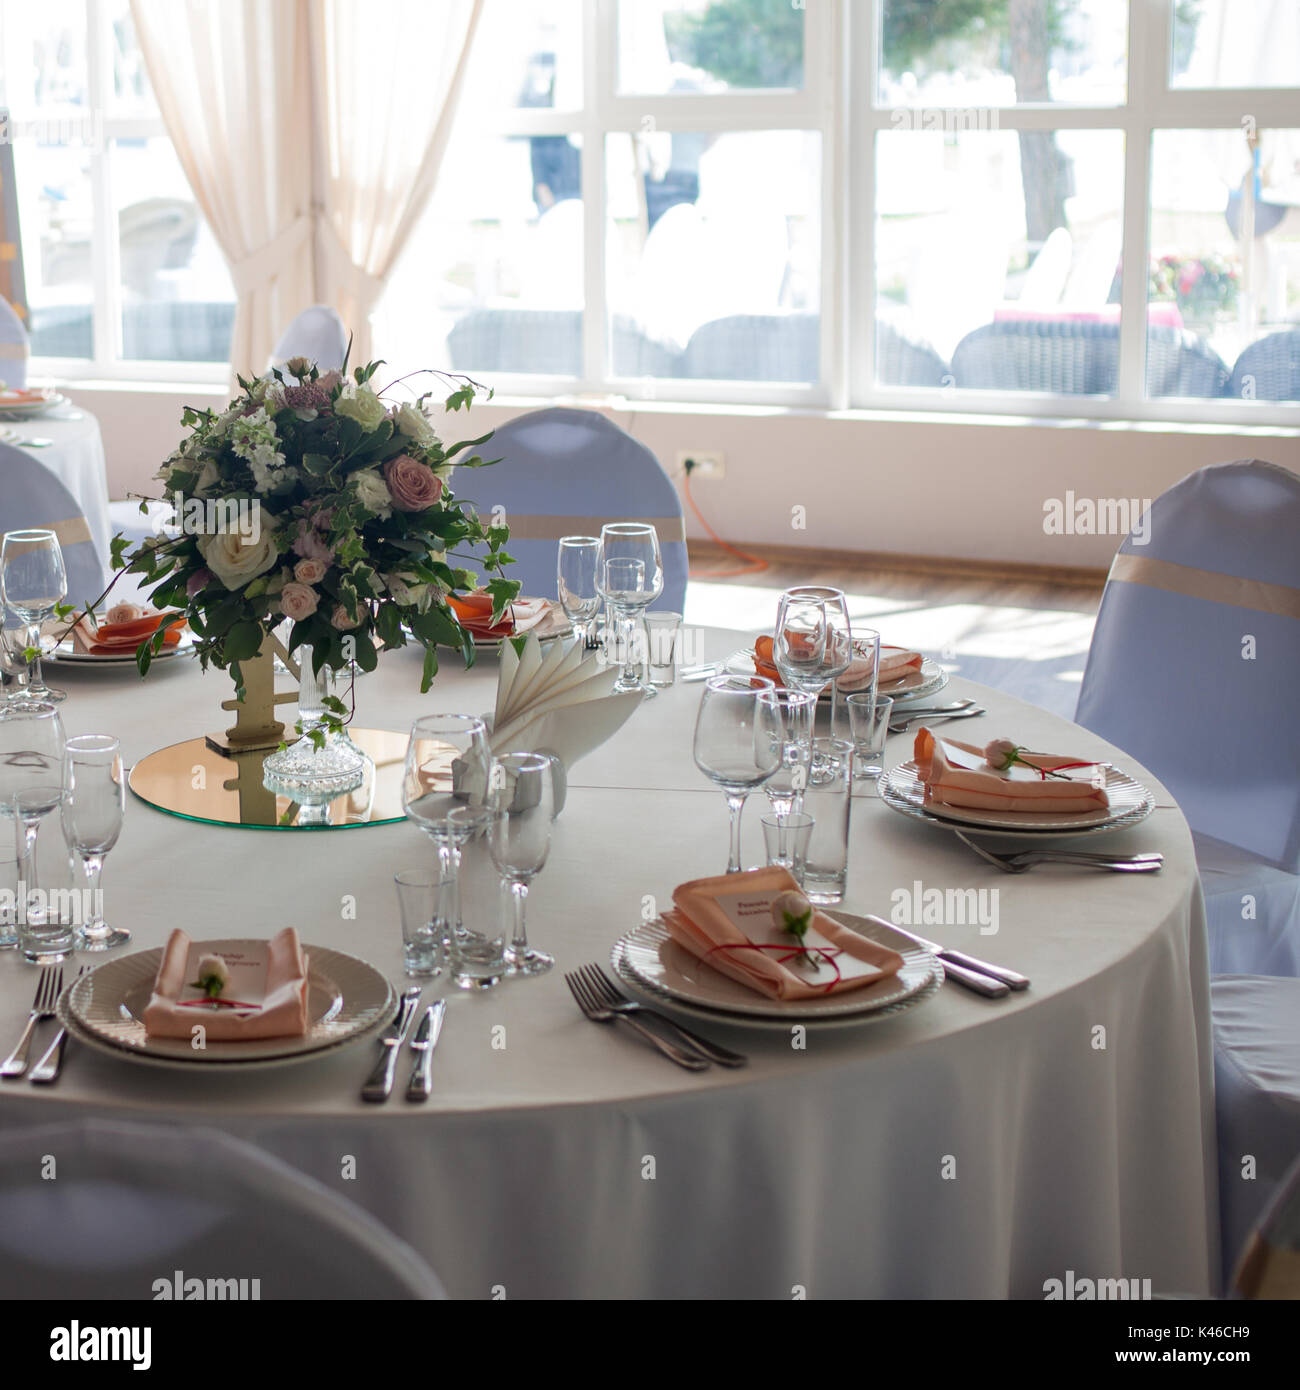 Schöne Hochzeit Tisch, rund Tisch für Gäste, Strauß Blumen in der Mitte  Stockfotografie - Alamy